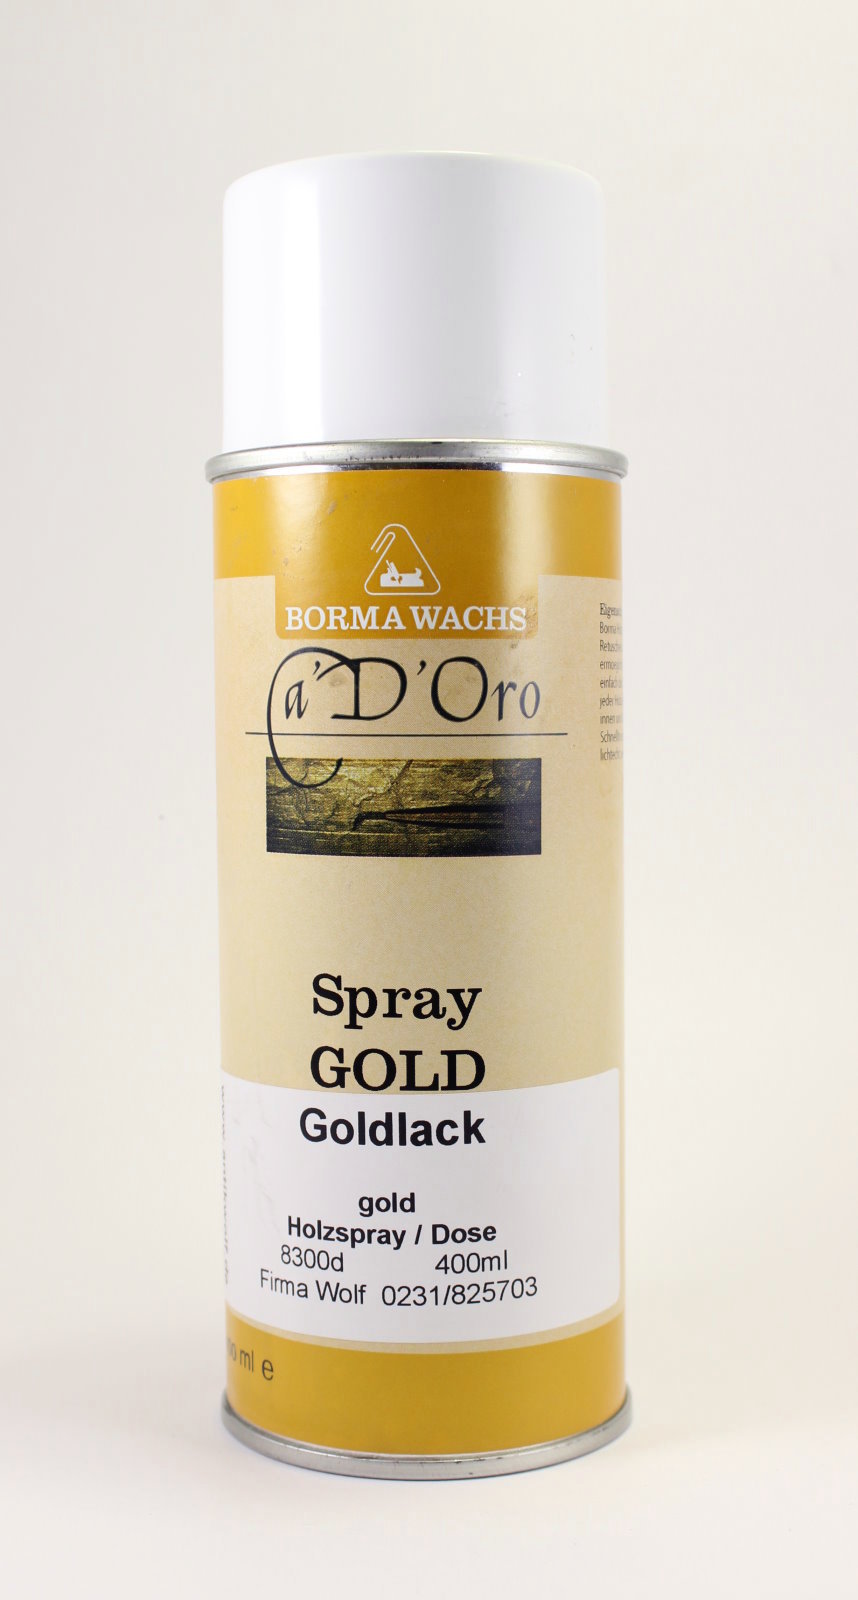 Goldlack Spray gold 400ml Art. 8300d